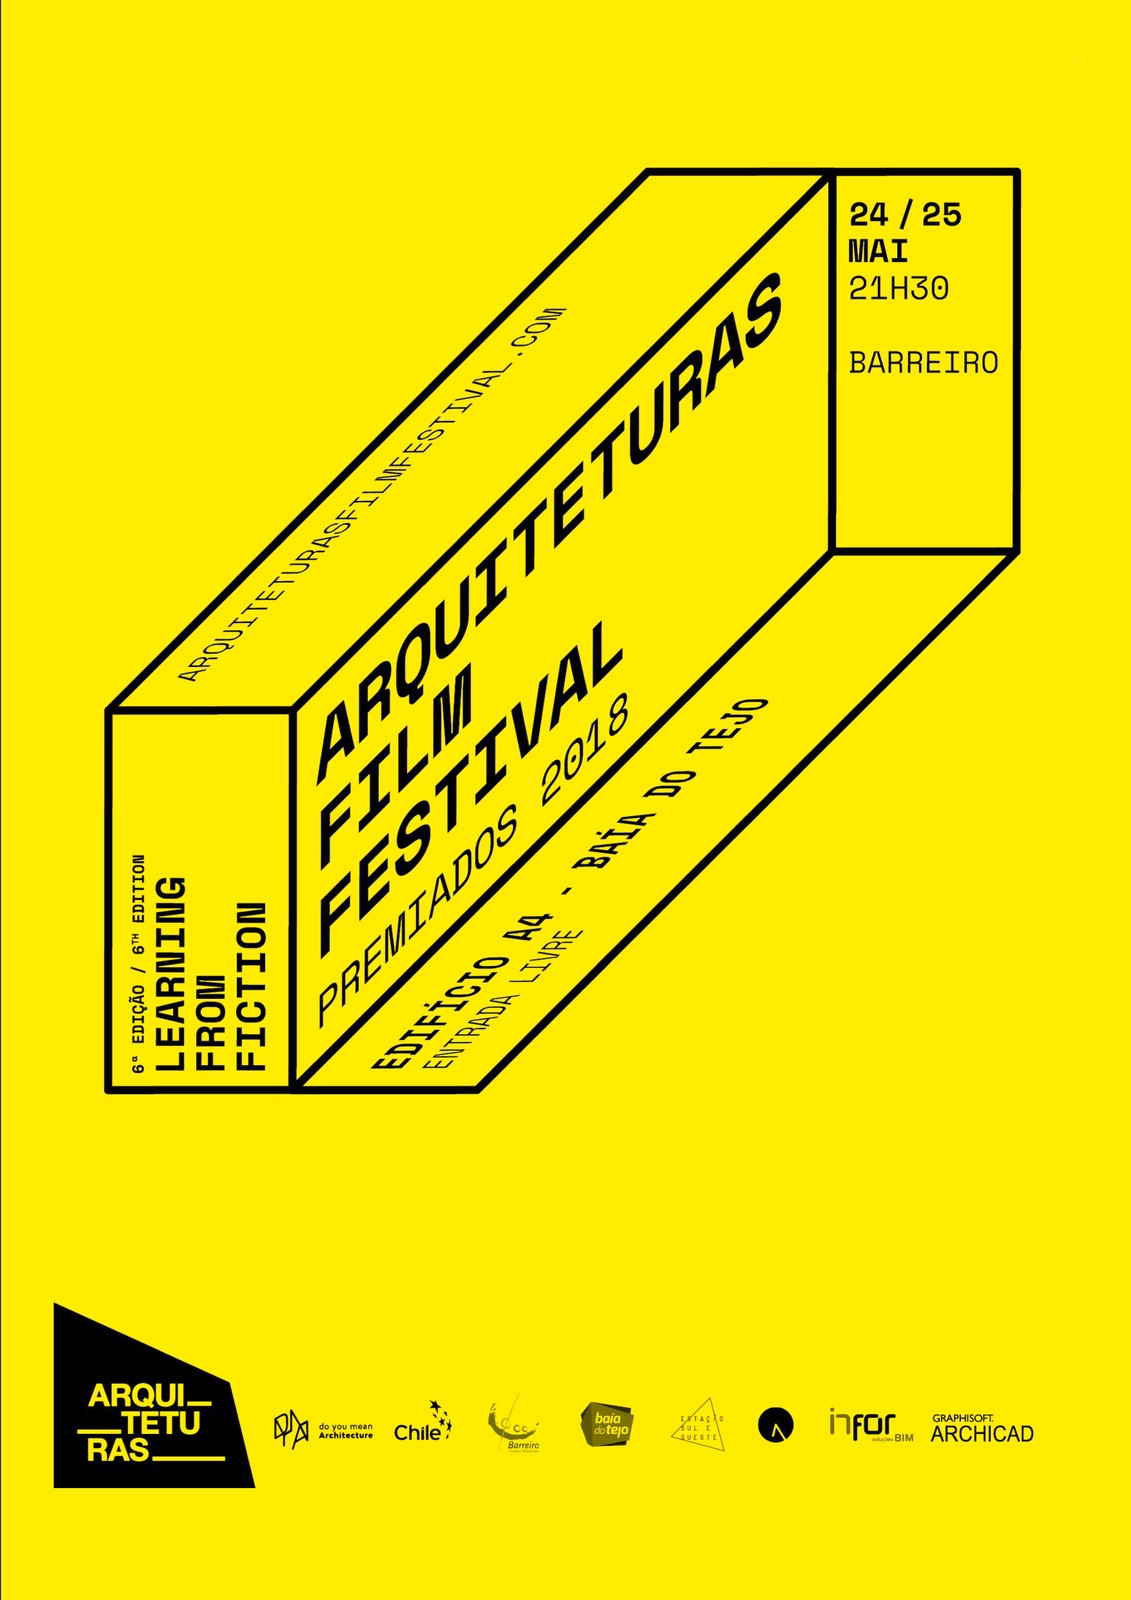 Arquiteturas Film Festival no Barreiro